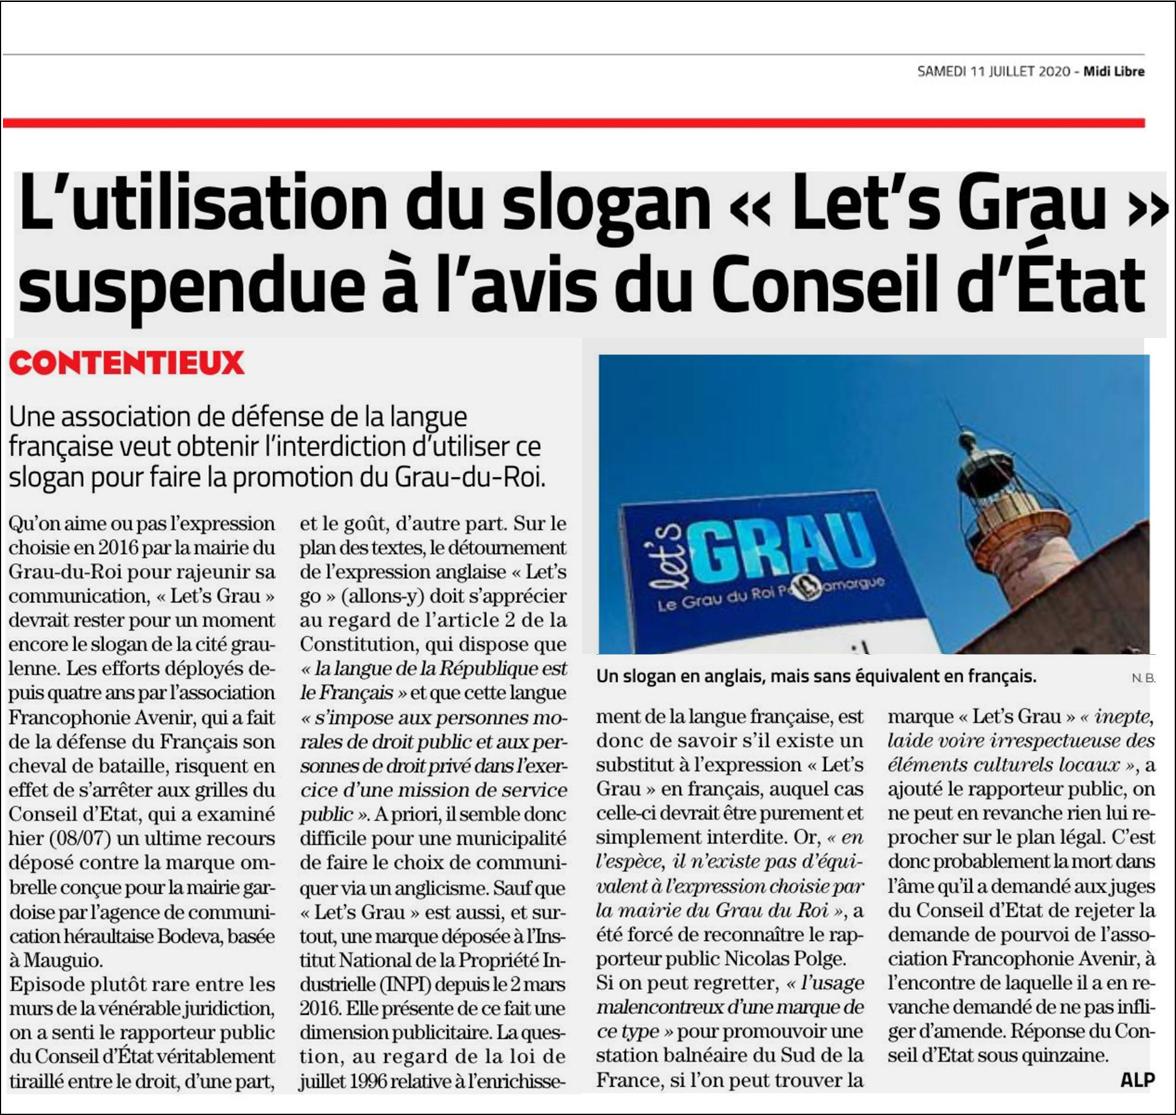 Affaire Let-s-Grau au Conseil d'État, article du journal Midi-Libre du-11 juillet 2020